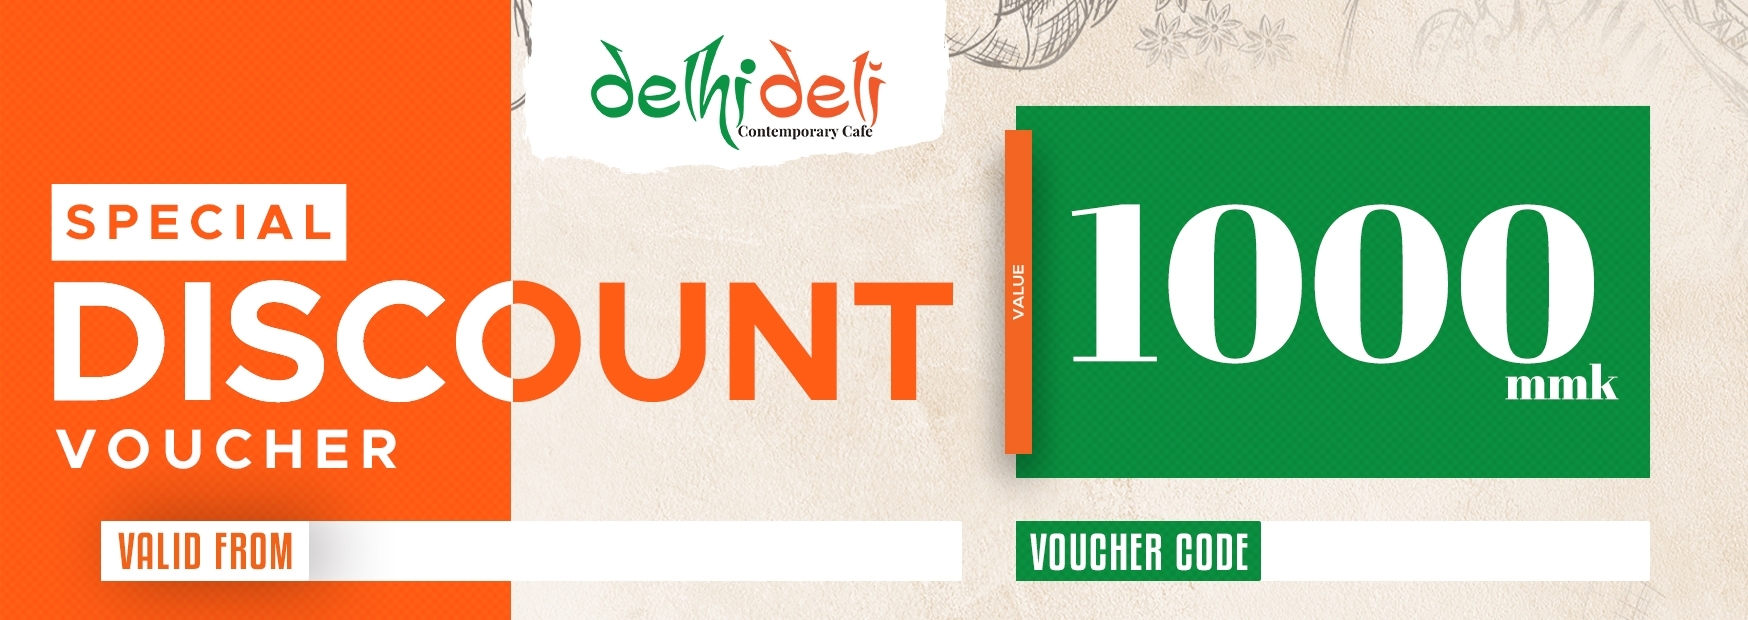 Branding of Super discount vouchers from Delhi deli